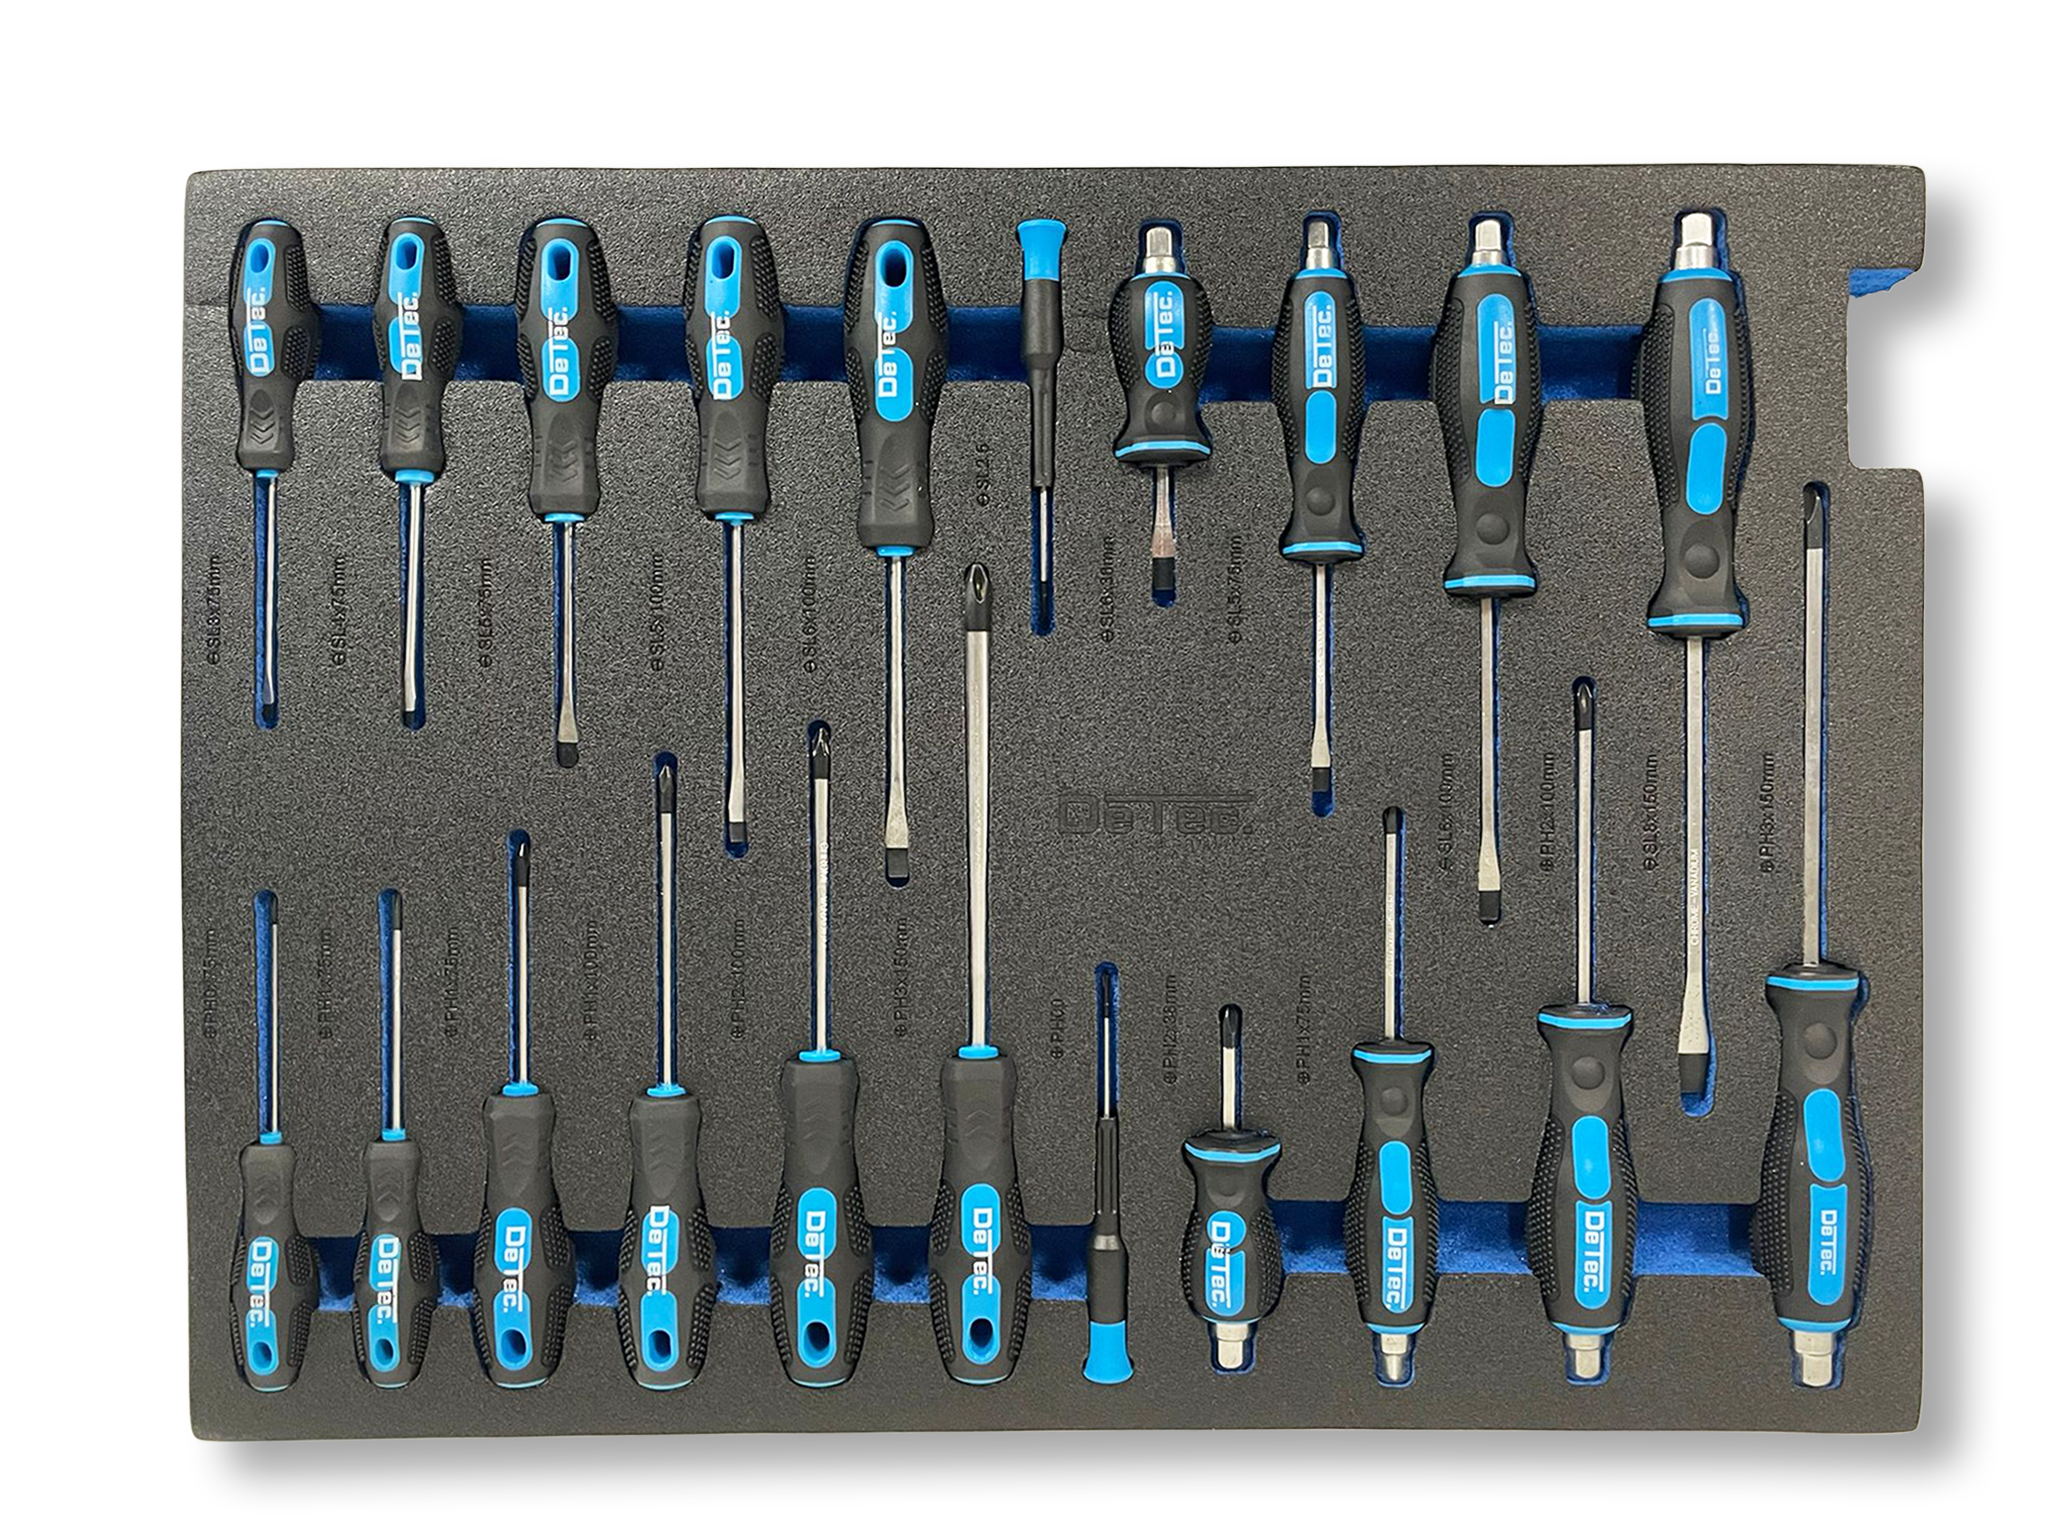 DeTec. Werkstattwagen 1066 Worker Edition in blau